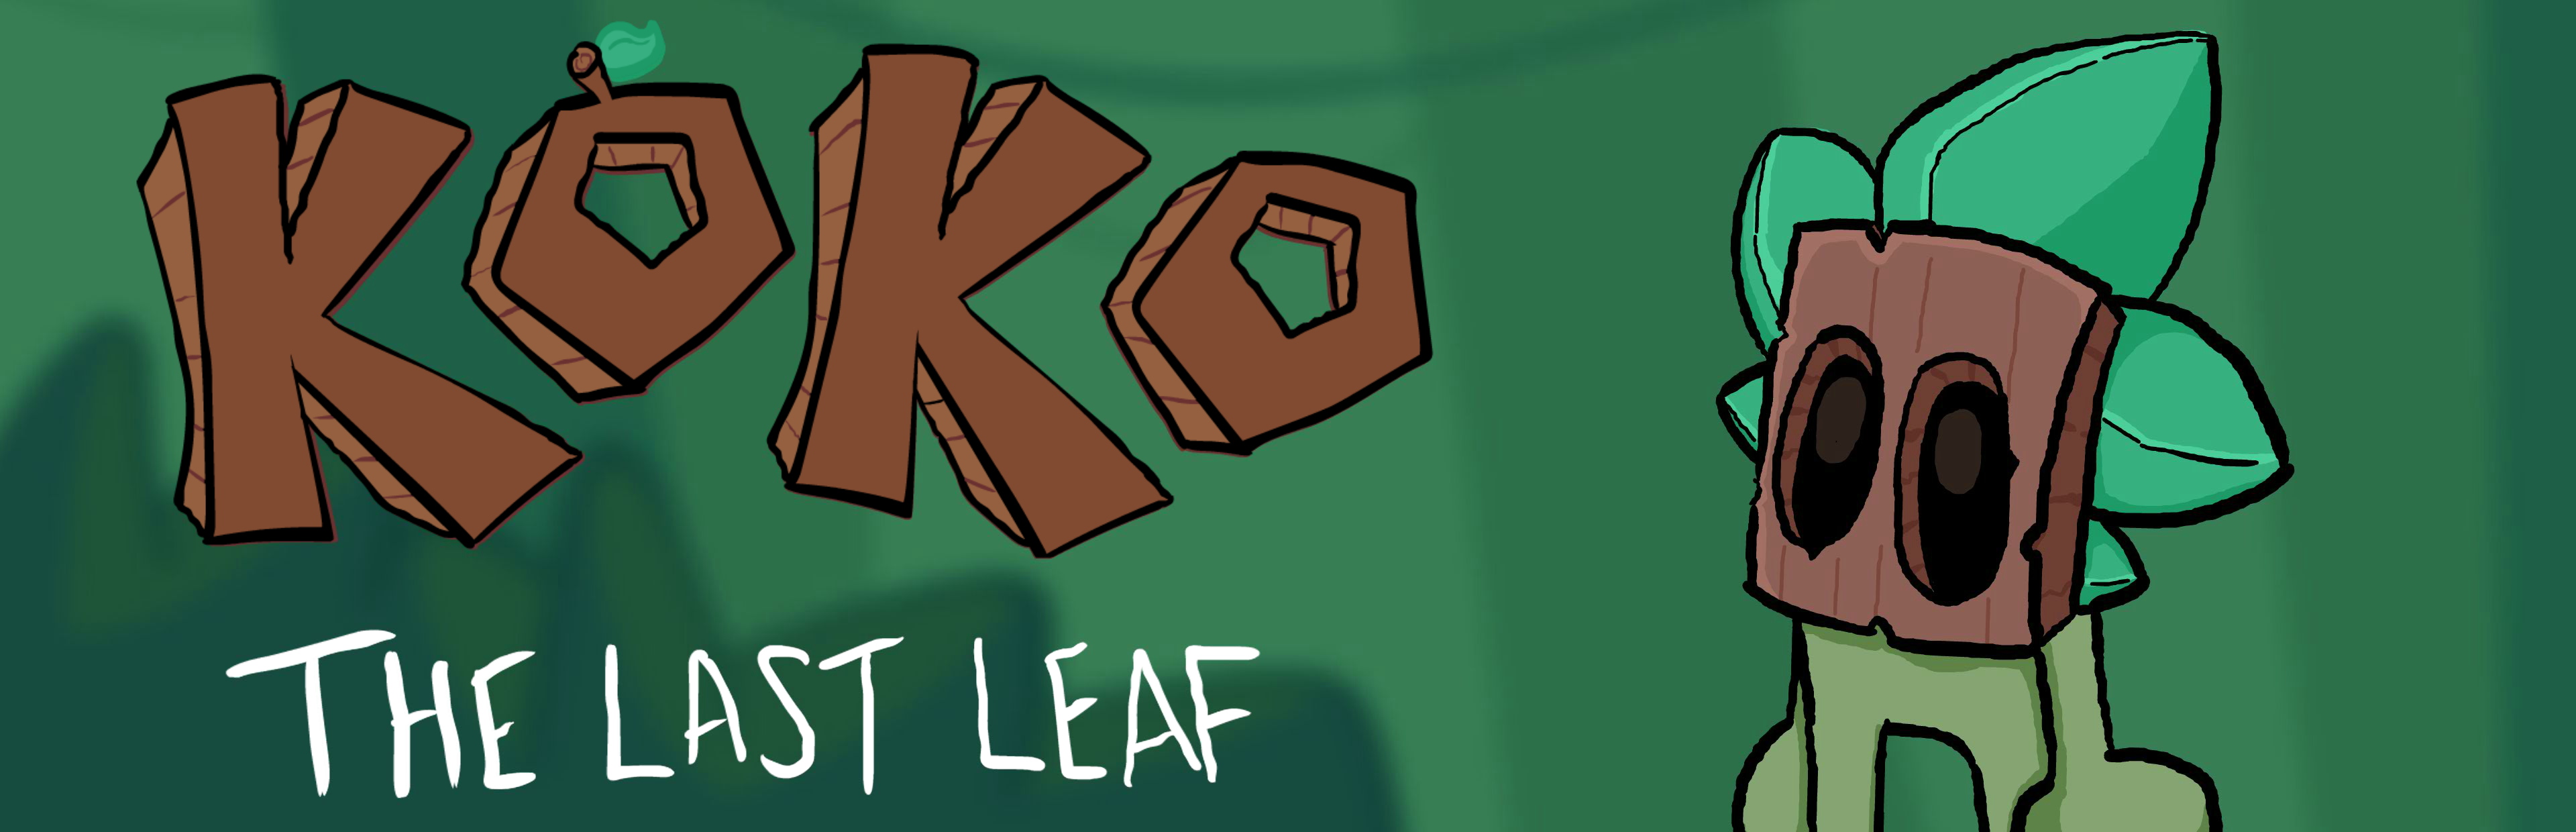 Koko, the Last Leaf Demo